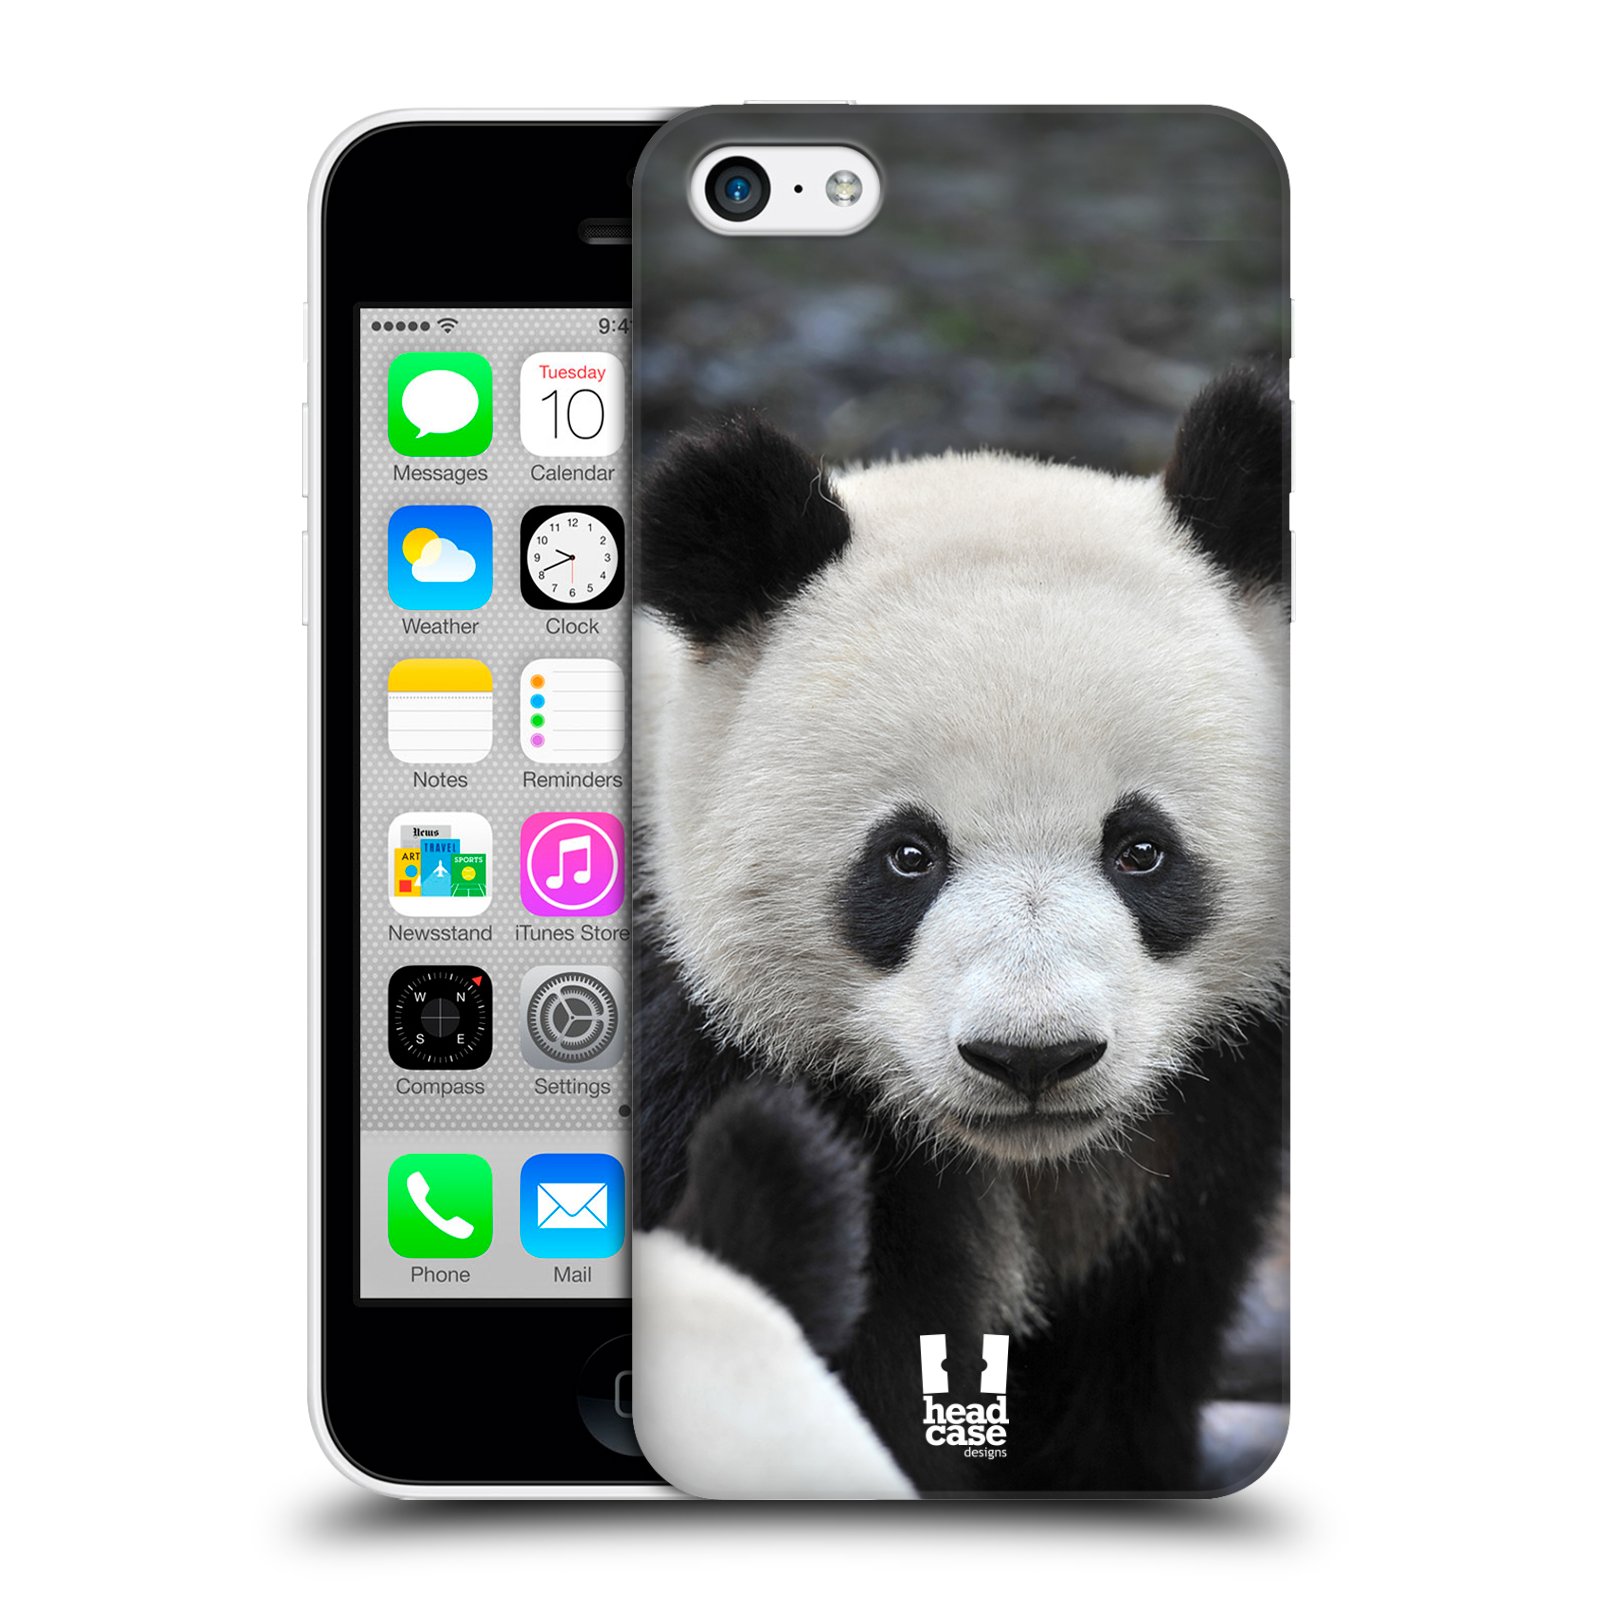 Zadní obal pro mobil Apple Iphone 5C - HEAD CASE - Svět zvířat medvěd panda